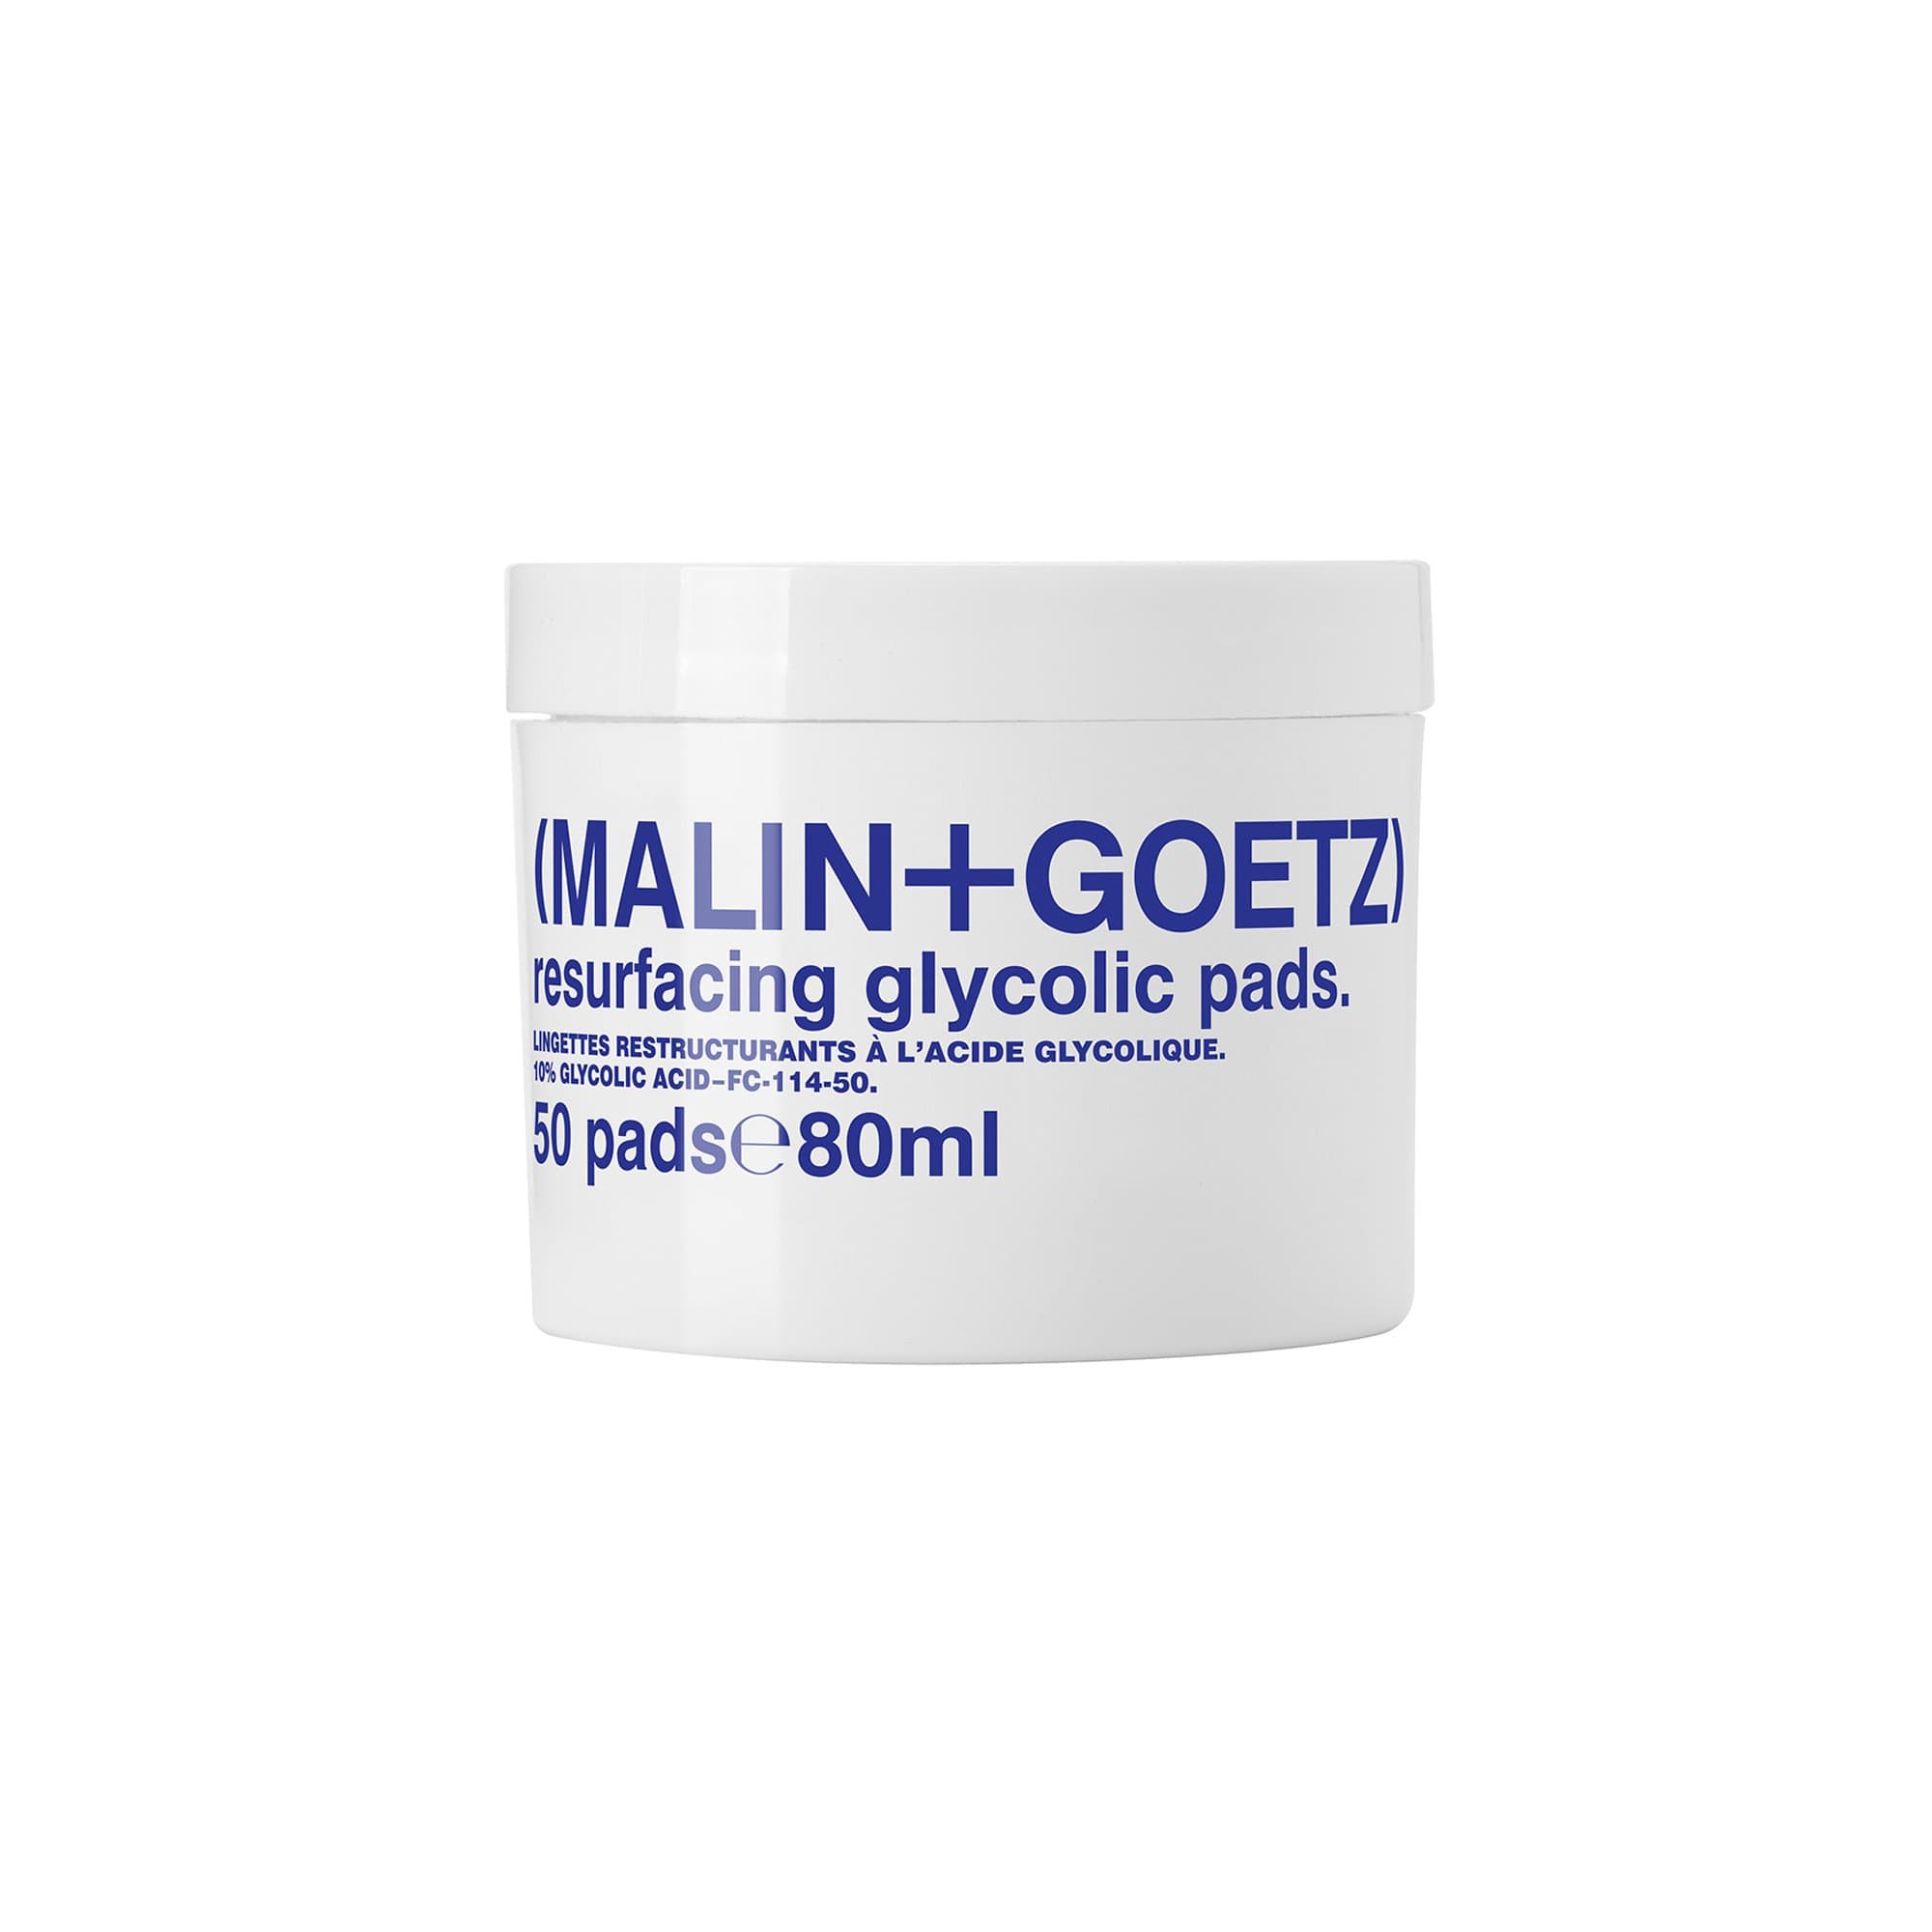 Resurfacing Glycolic Pads (MALIN+GOETZ) Almofadas de algodão com ácido glicólico